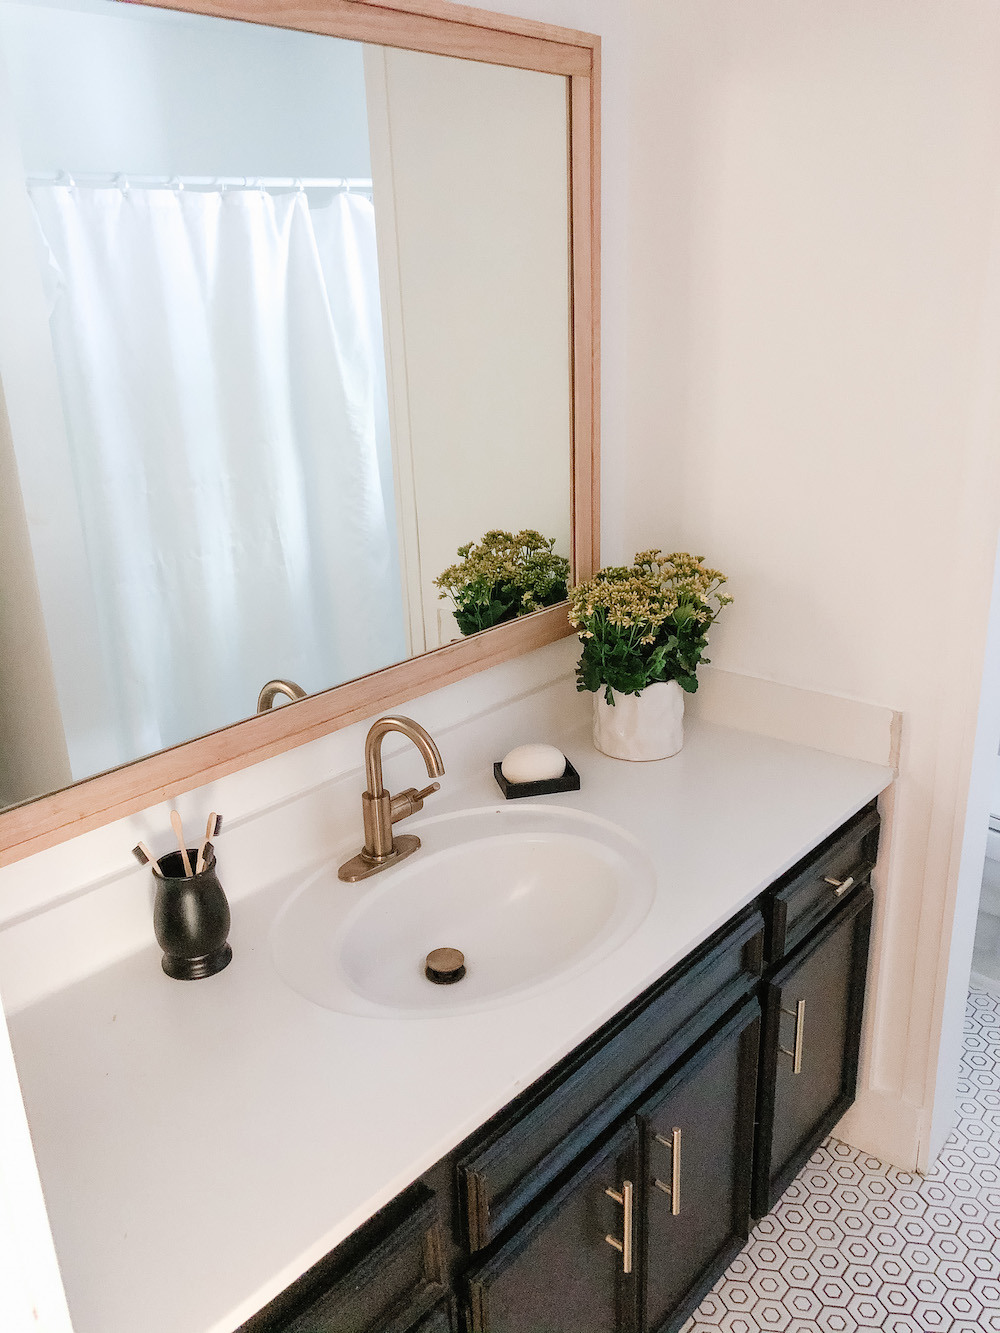 DIY Hallway Bathroom Mirror Makeover!